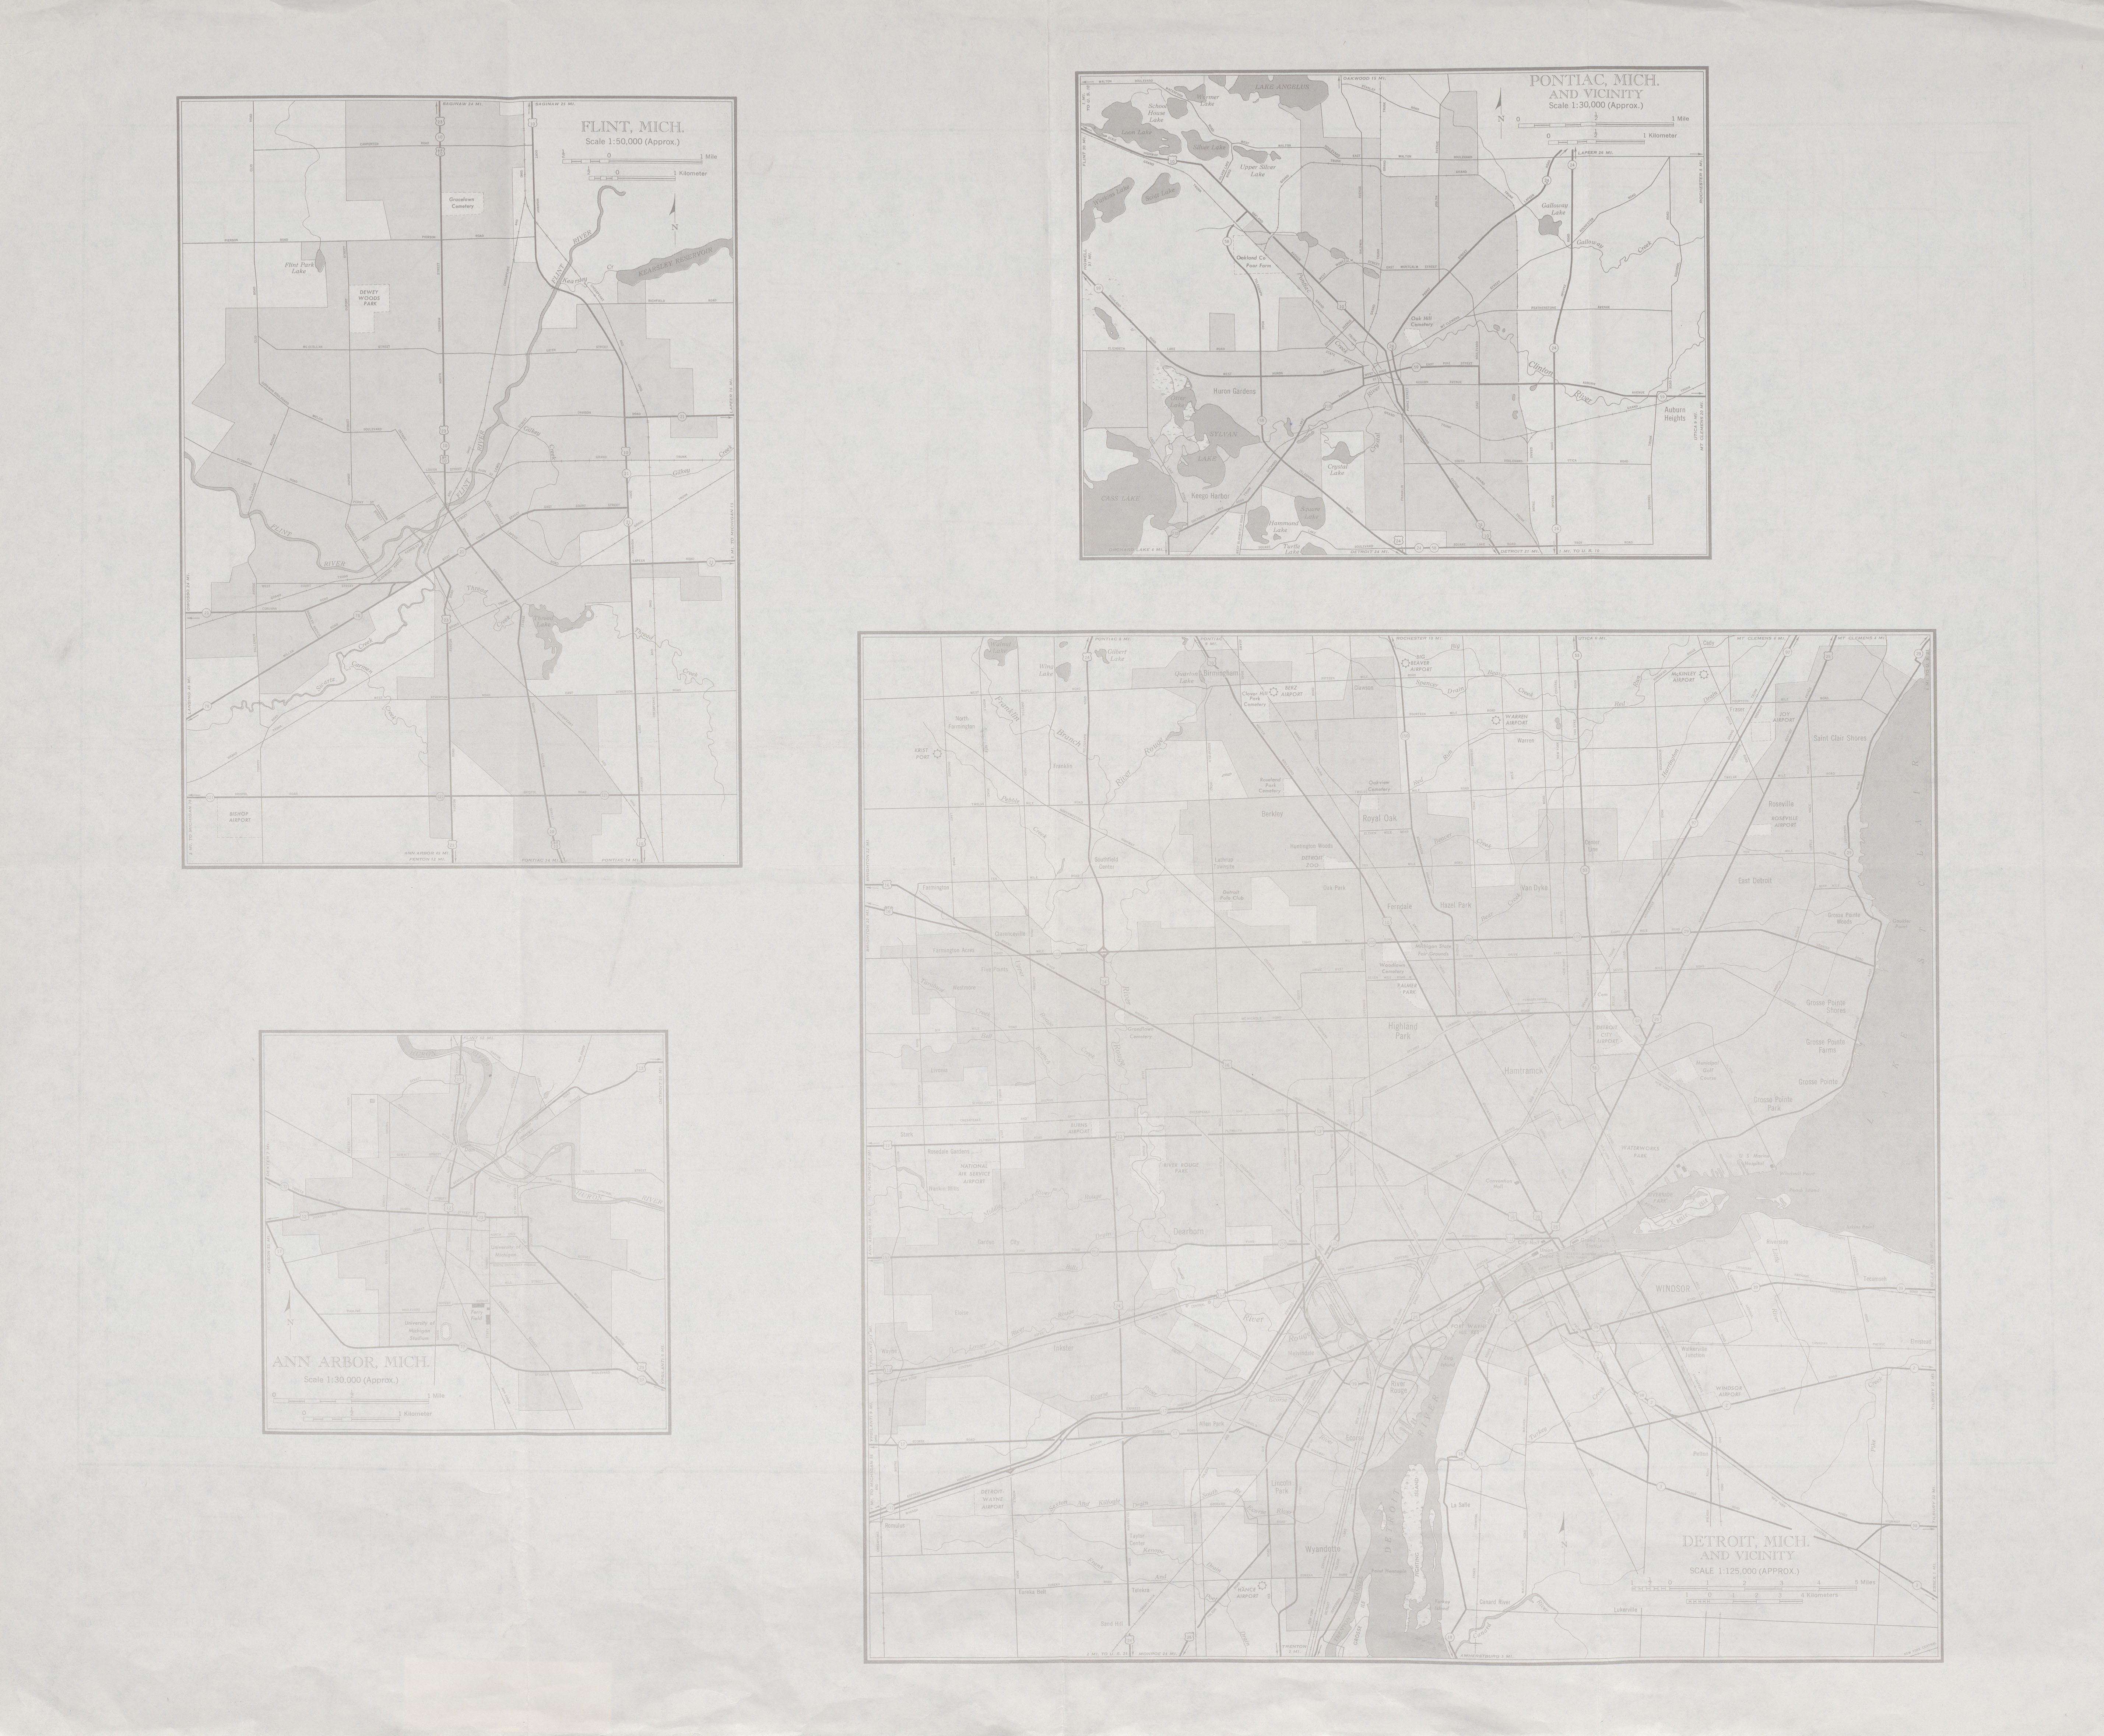 Mapa de las Ciudades de Flint, Ann Arbor, Pontiac, Detroit, Michigan, Estados Unidos 1949